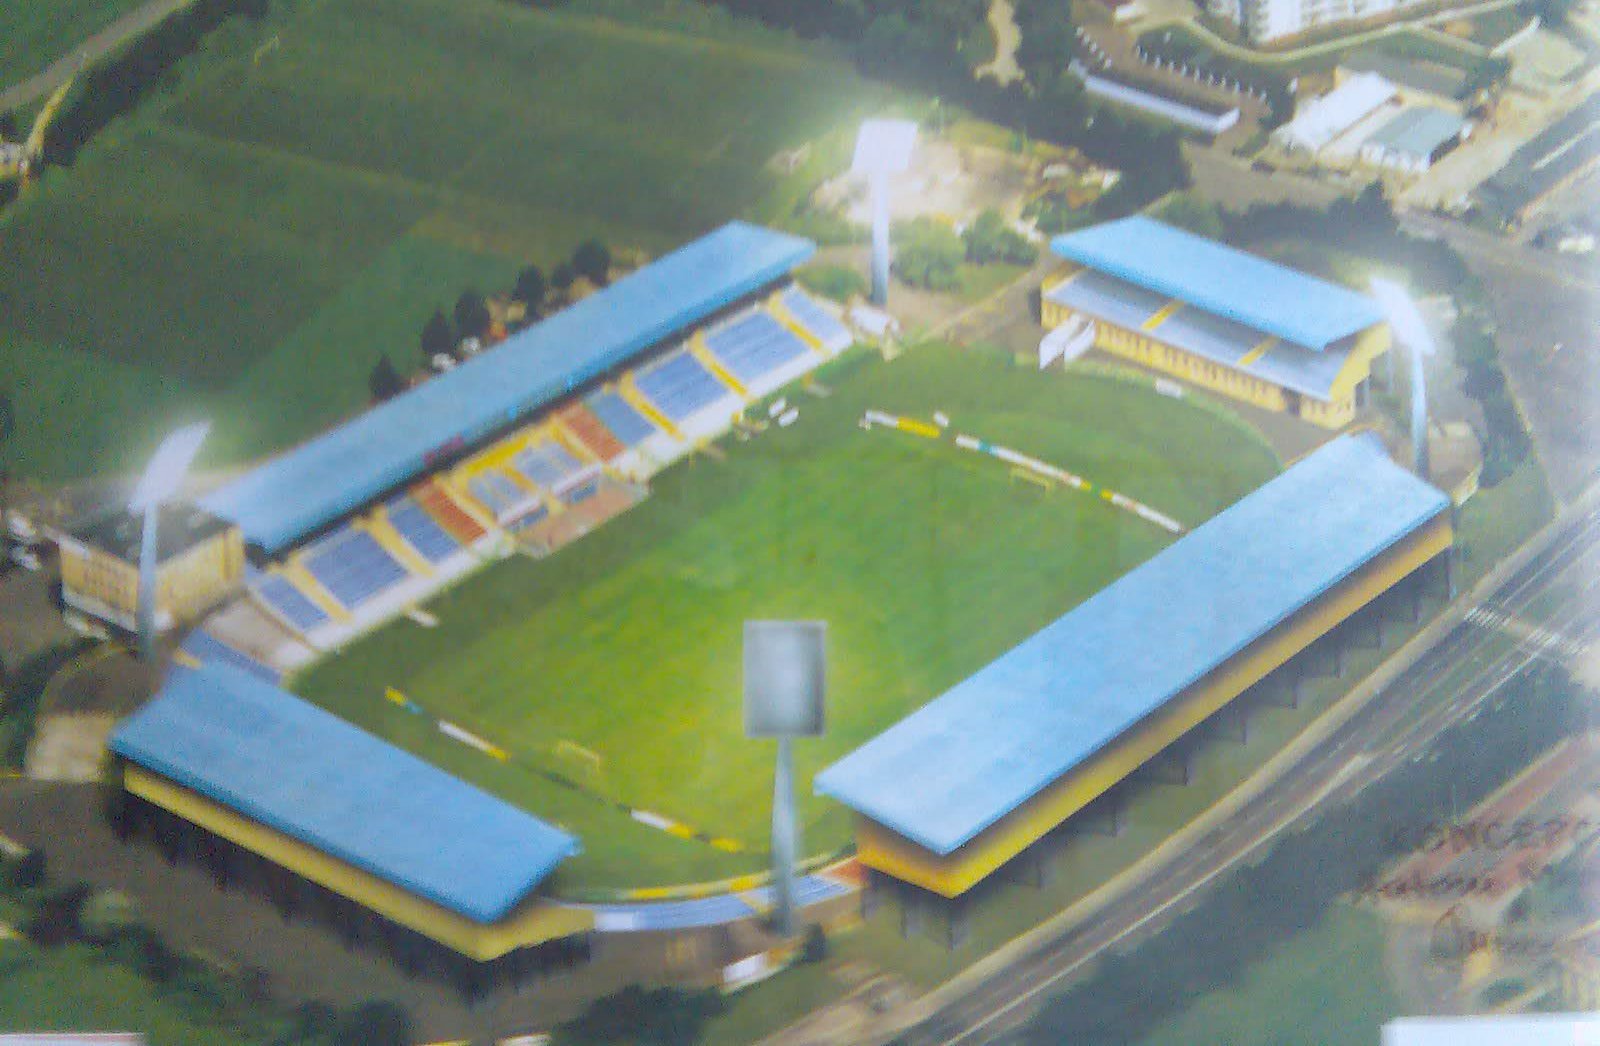 stadion w Olsztynie